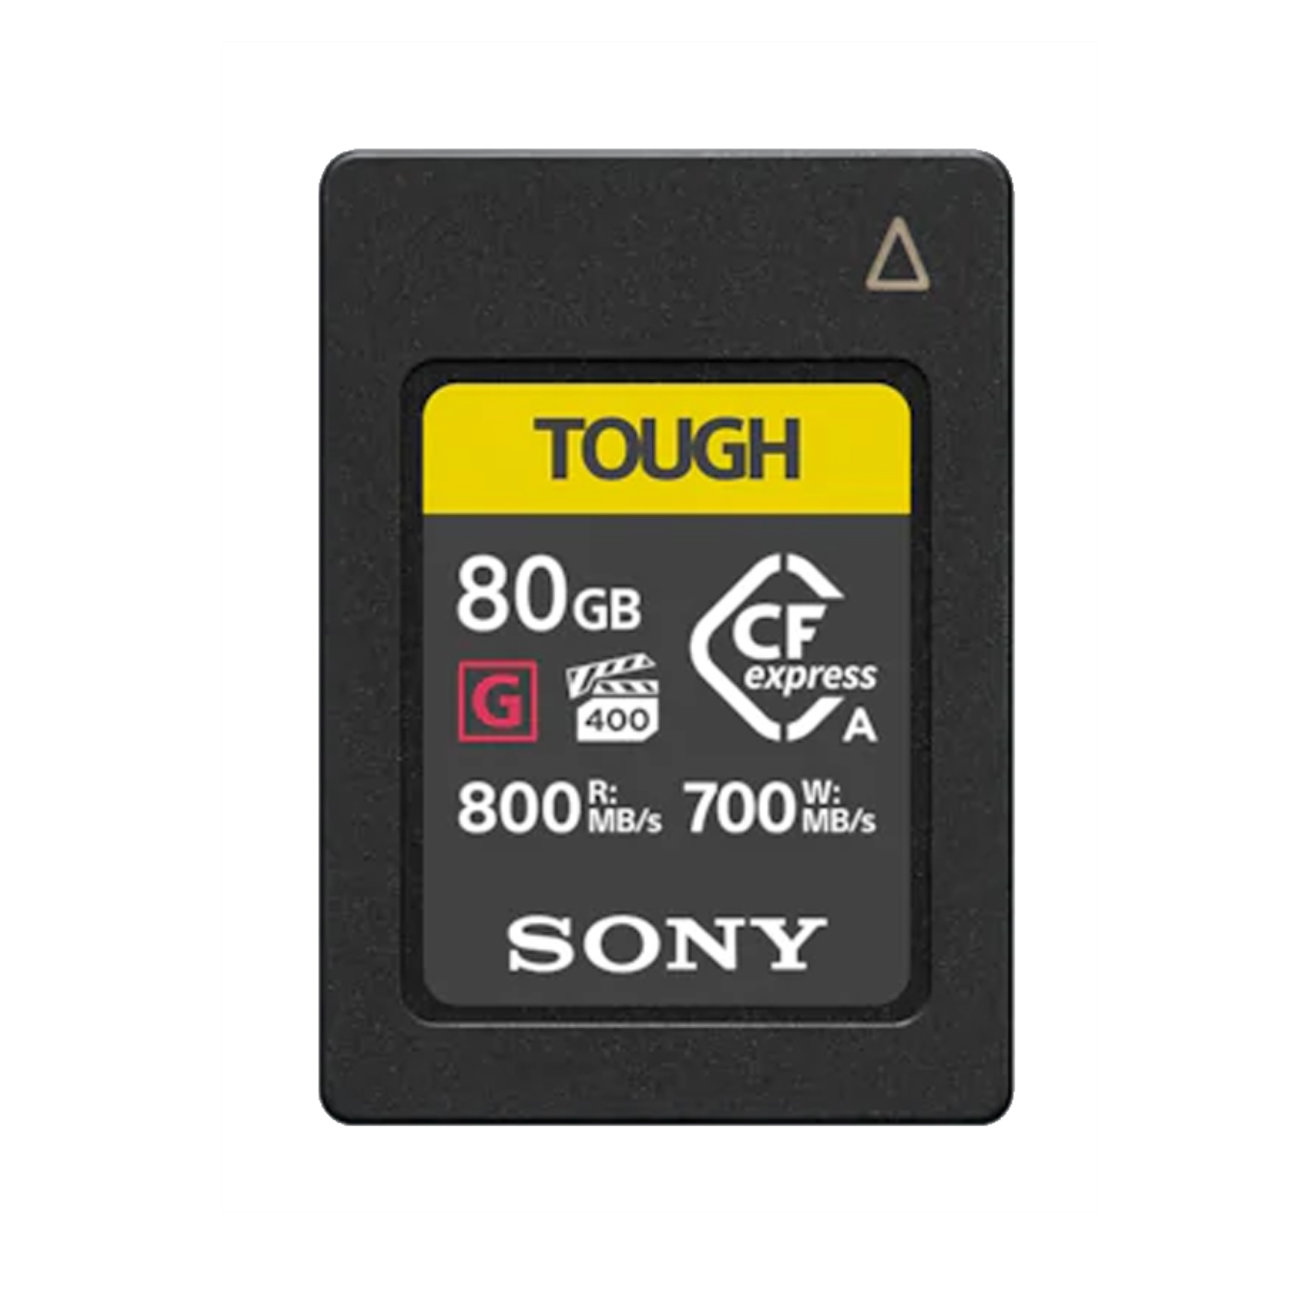 Sony 80GB CFexpress Typ A Tough